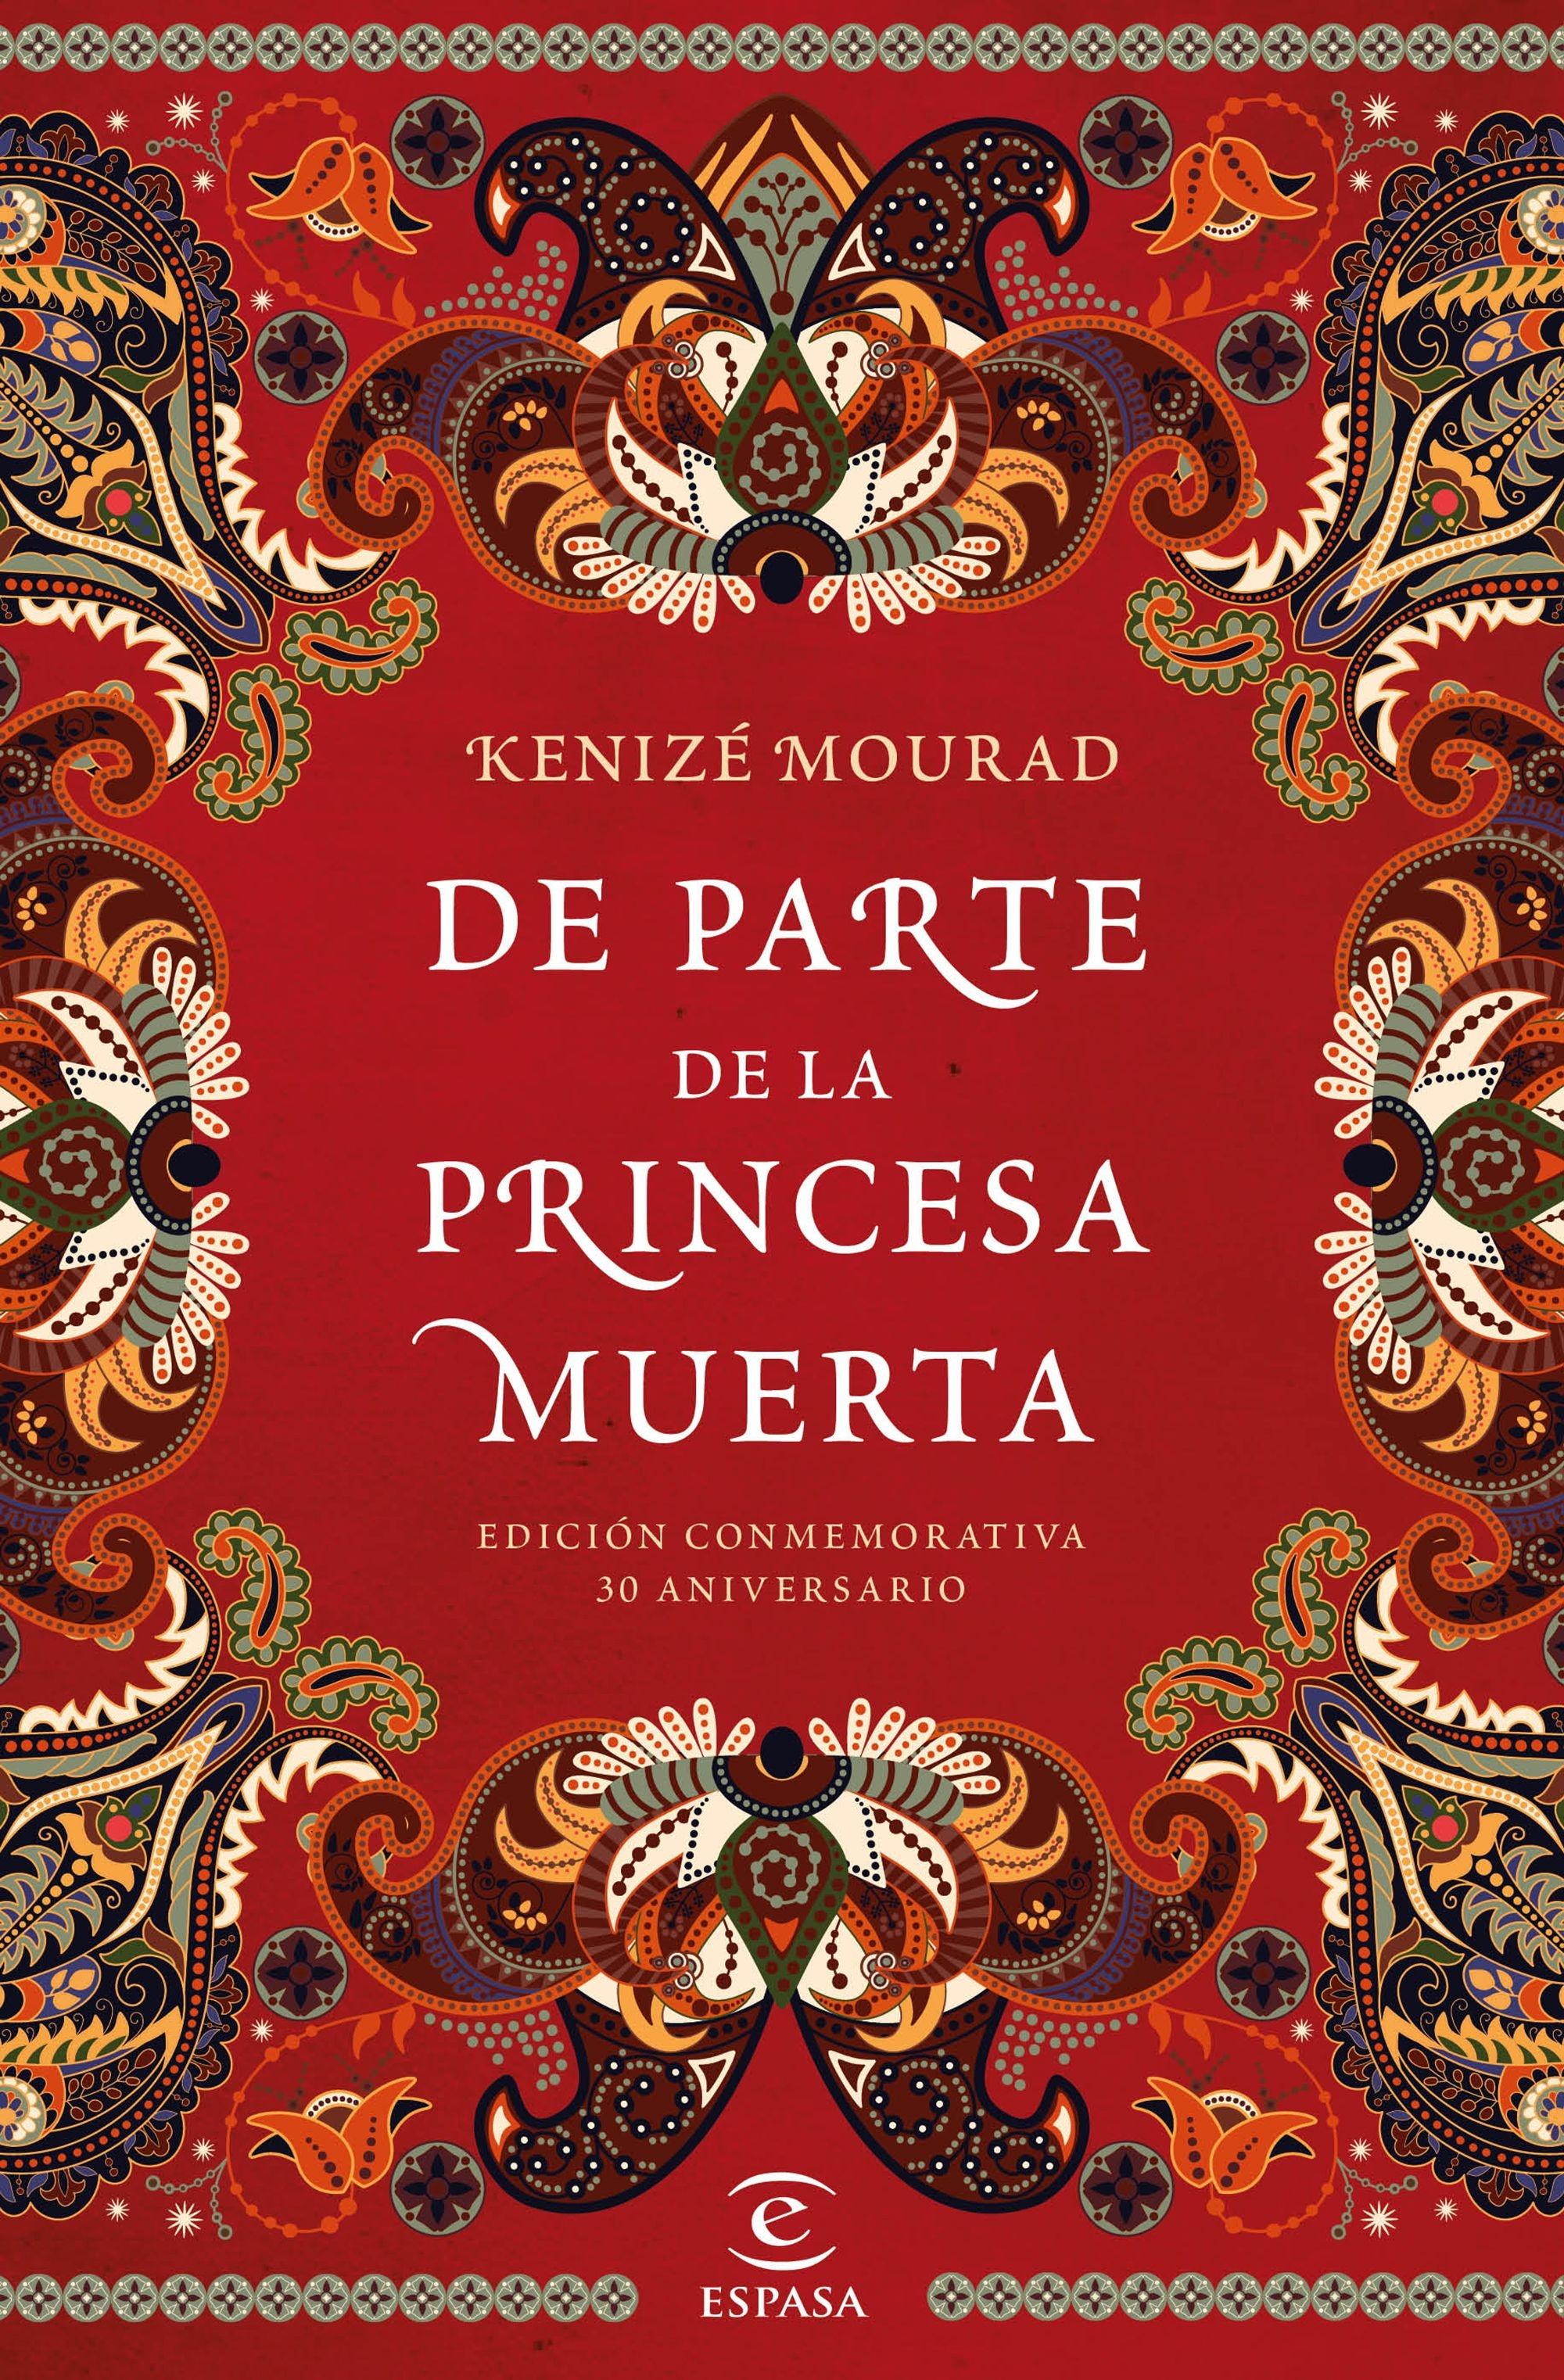 De Parte de la Princesa Muerta "Edición Conmemorativa 30 Aniversario". 